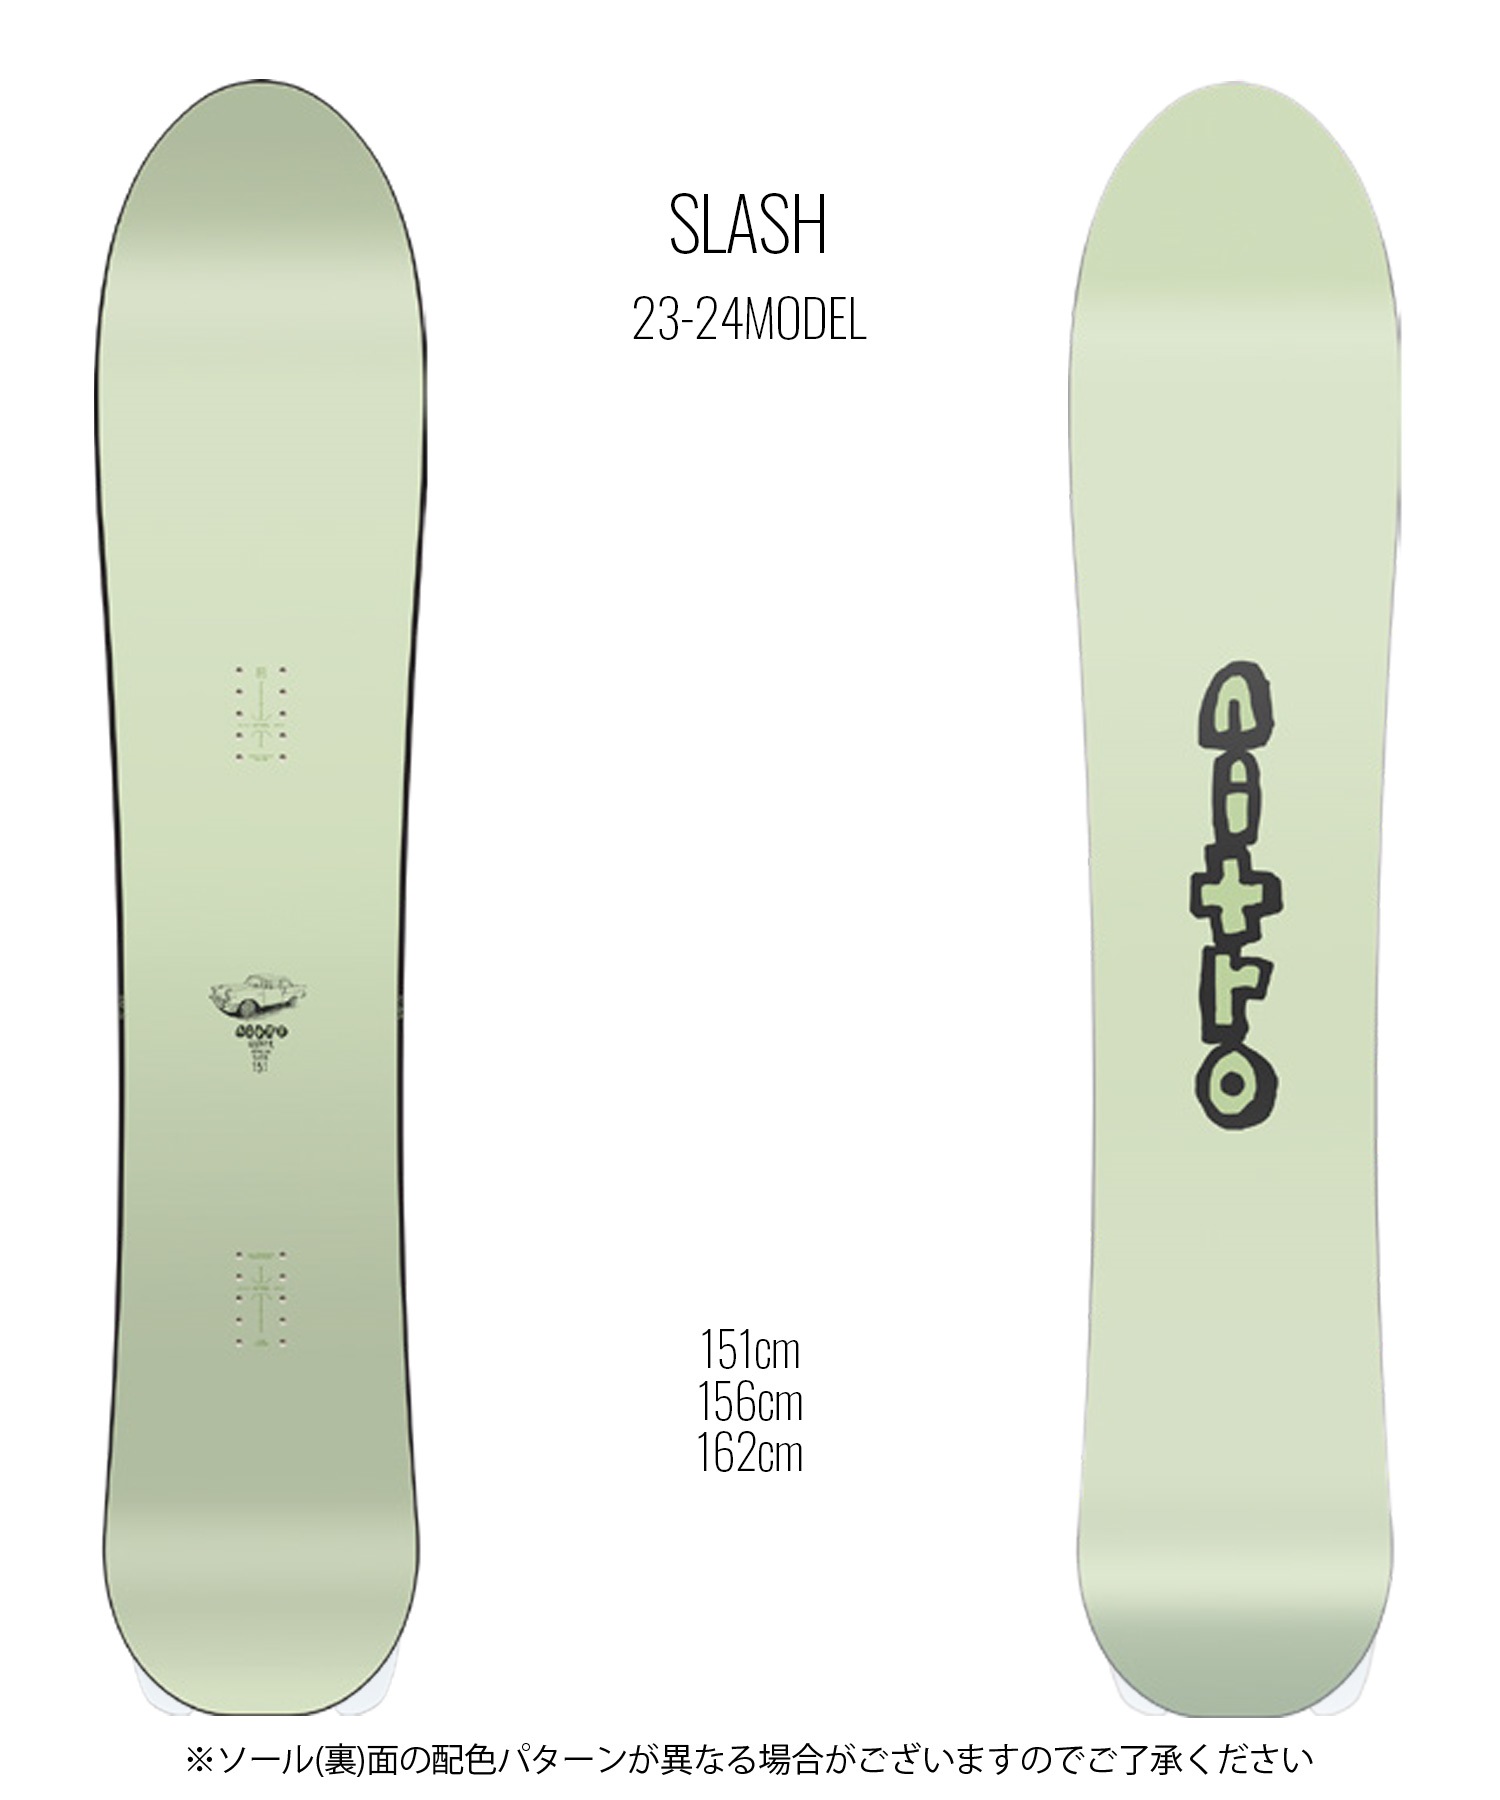 スノーボード 板 メンズ NITRO ナイトロ SLASH 23-24モデル ムラサキスポーツ KK D18(ONECOLOR-151cm)